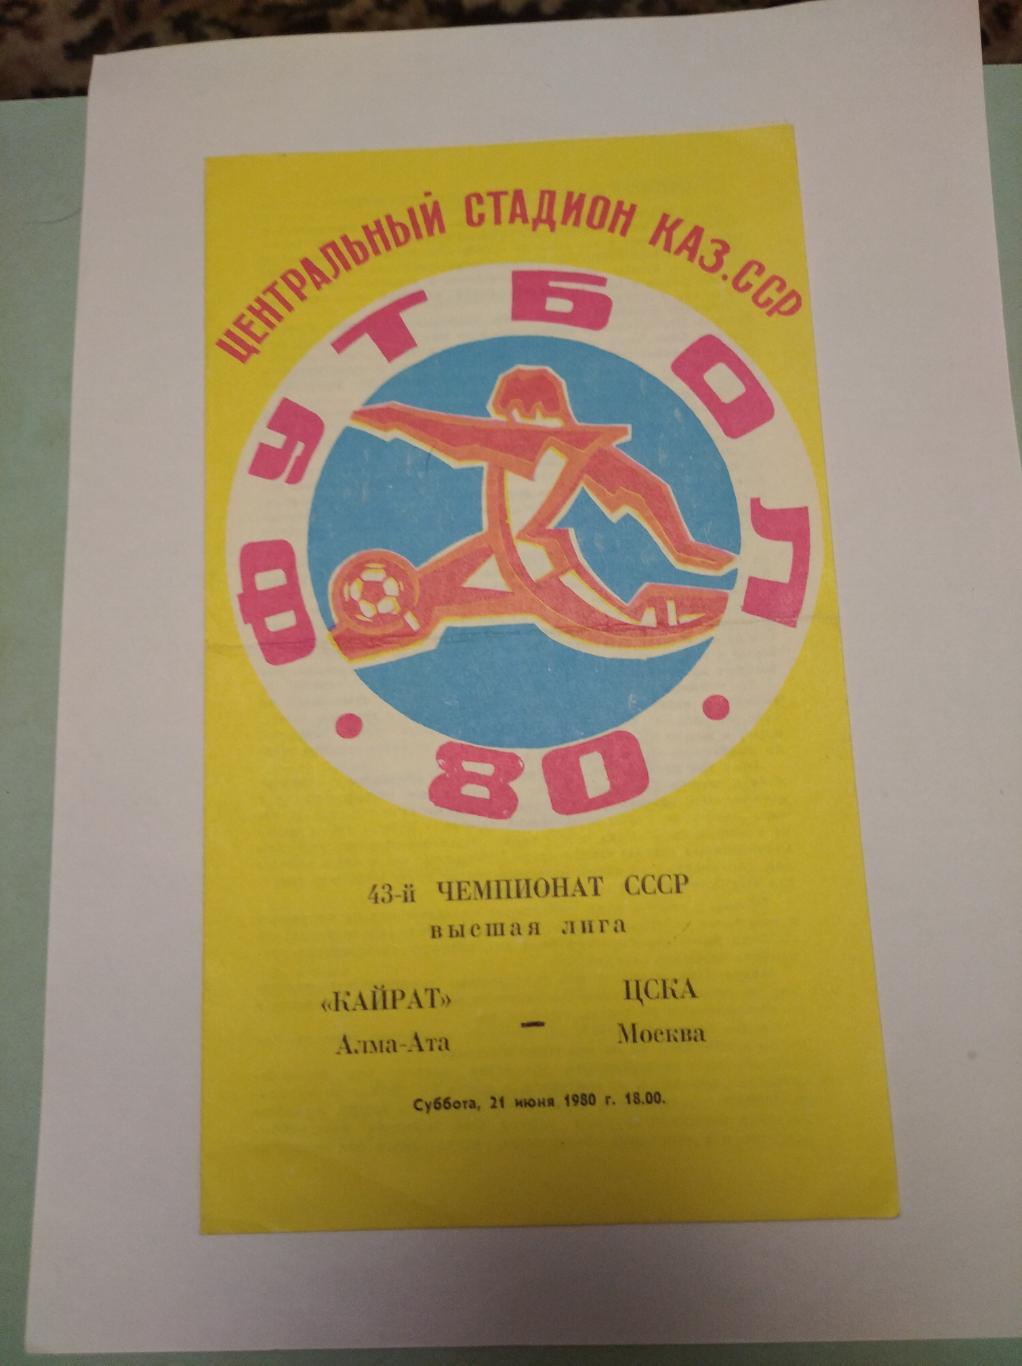 Кайрат Алма-Ата - ЦСКА Москва. 21 июня 1980